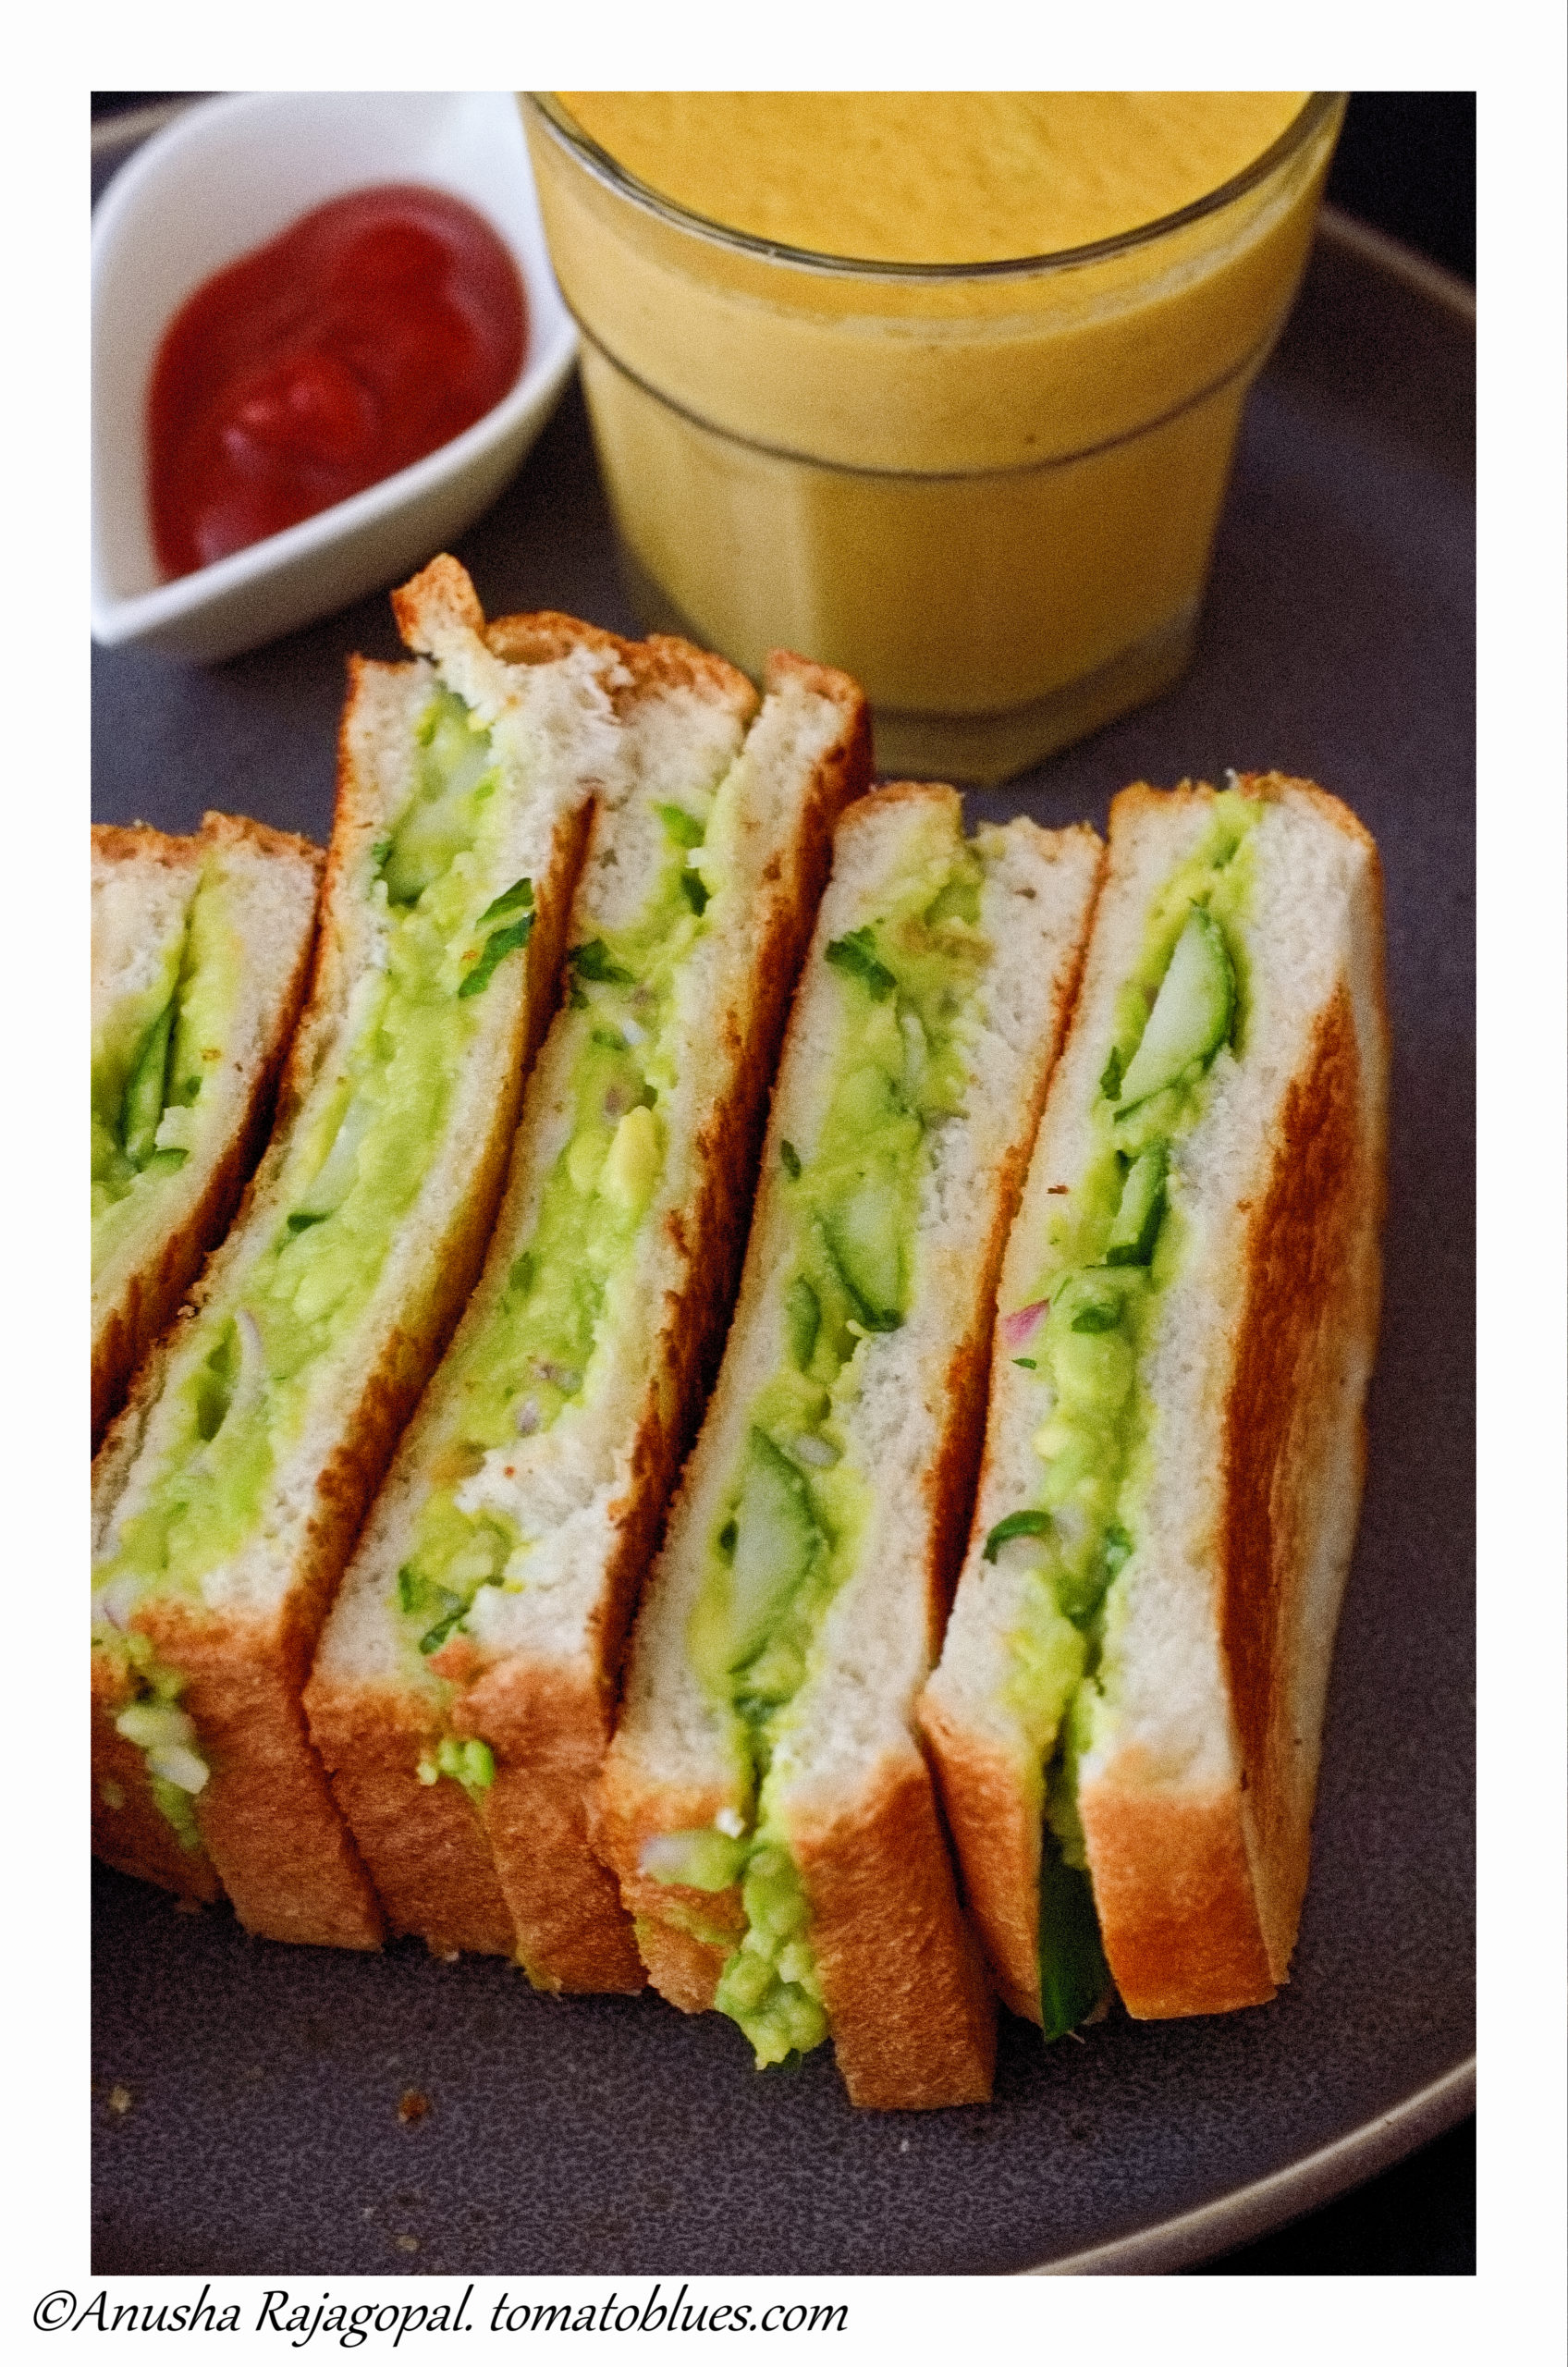 guacamole sandwich